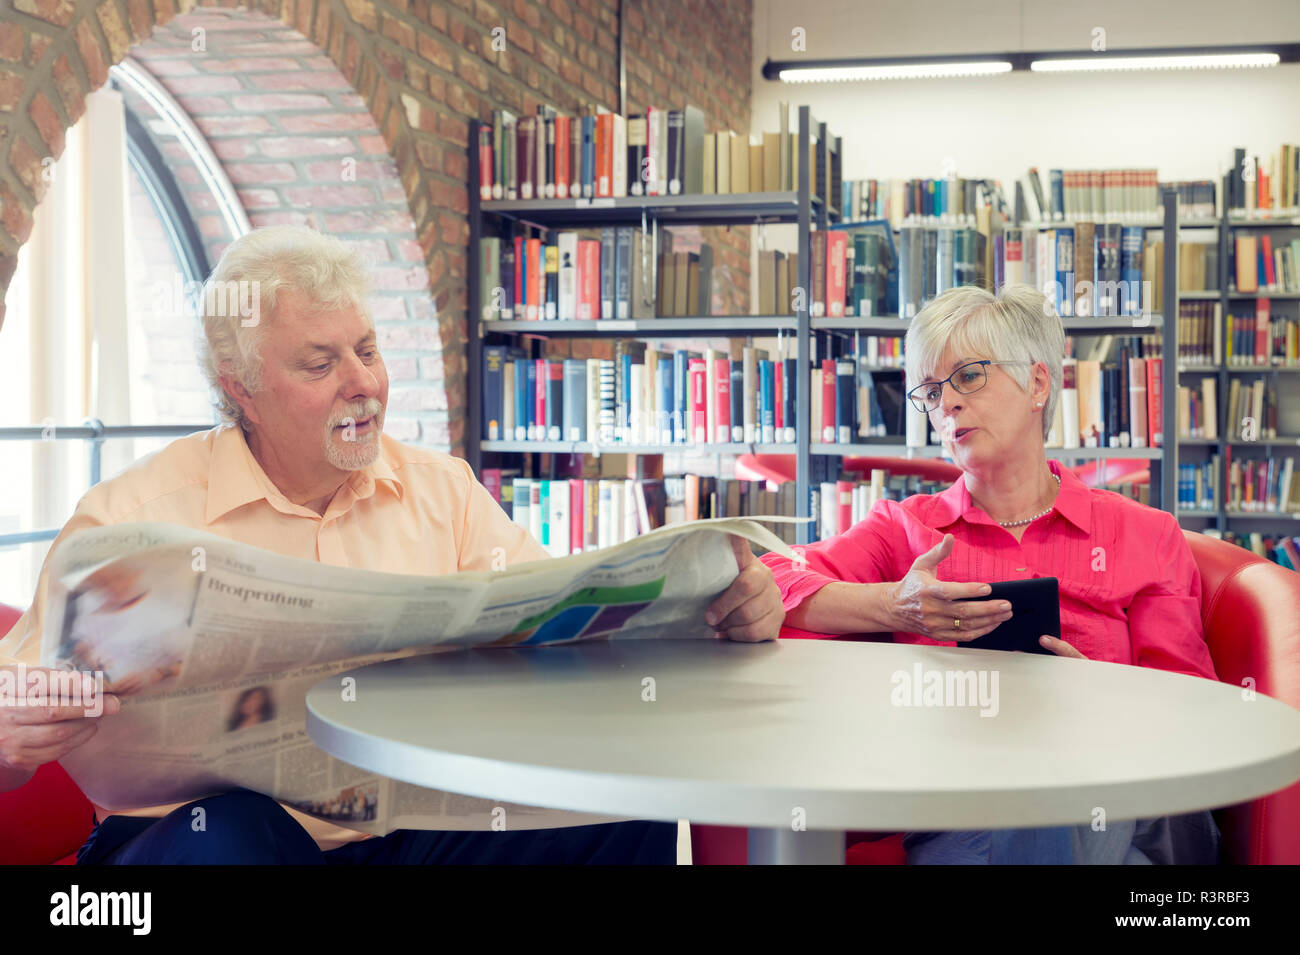 Ein Seniorenpaar in einer Bibliothek mit Zeitung und Kindle. Grevenbroich, Nordrhein-Westfalen, Deutschland Foto Stock